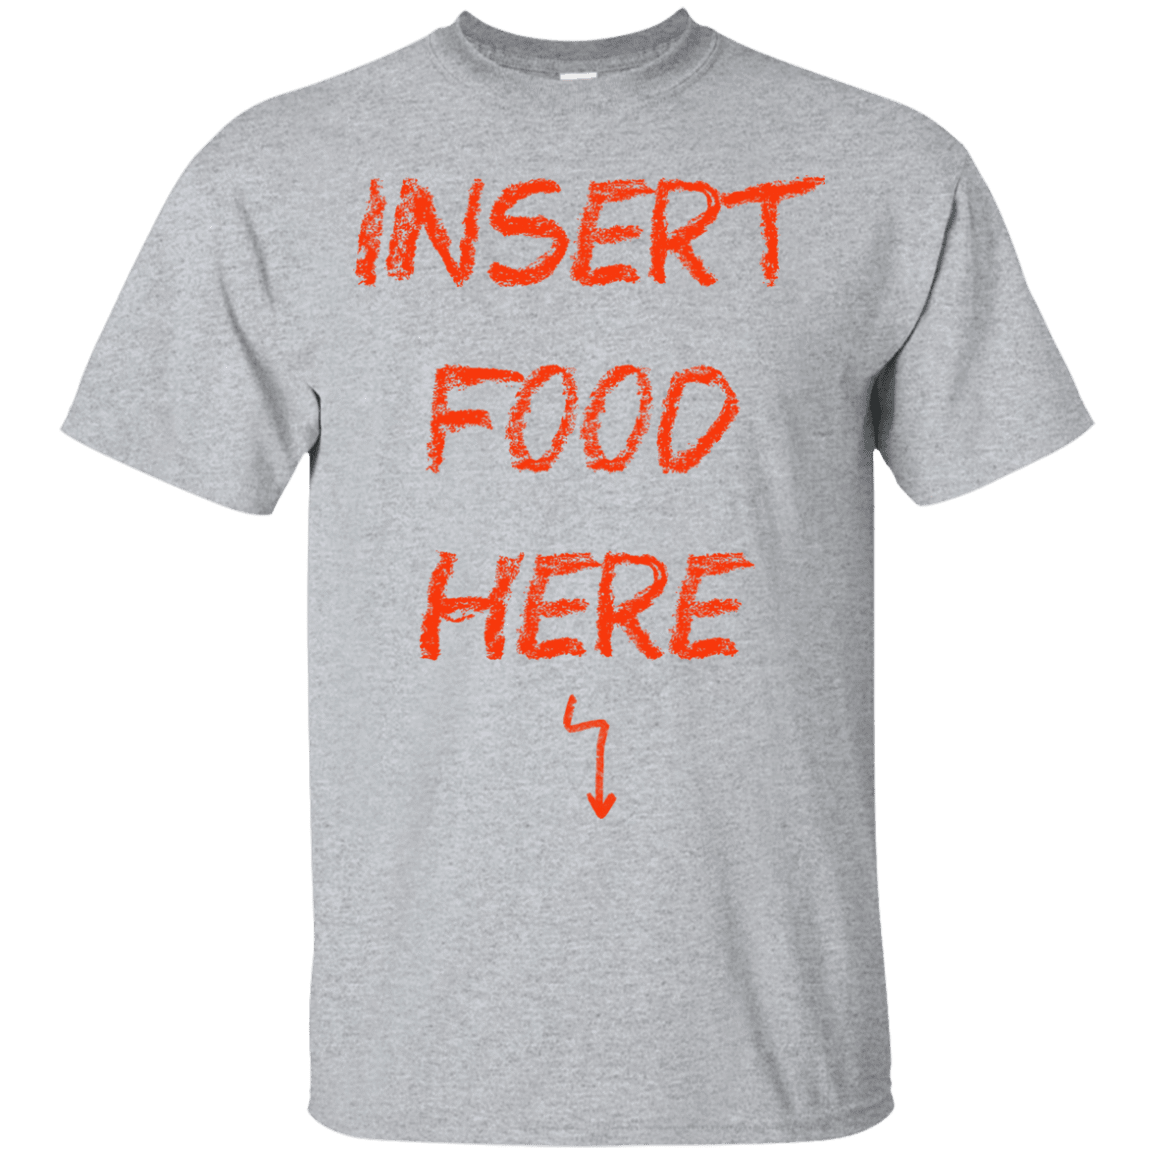 T-Shirts Sport Grey / S Insert Food T-Shirt